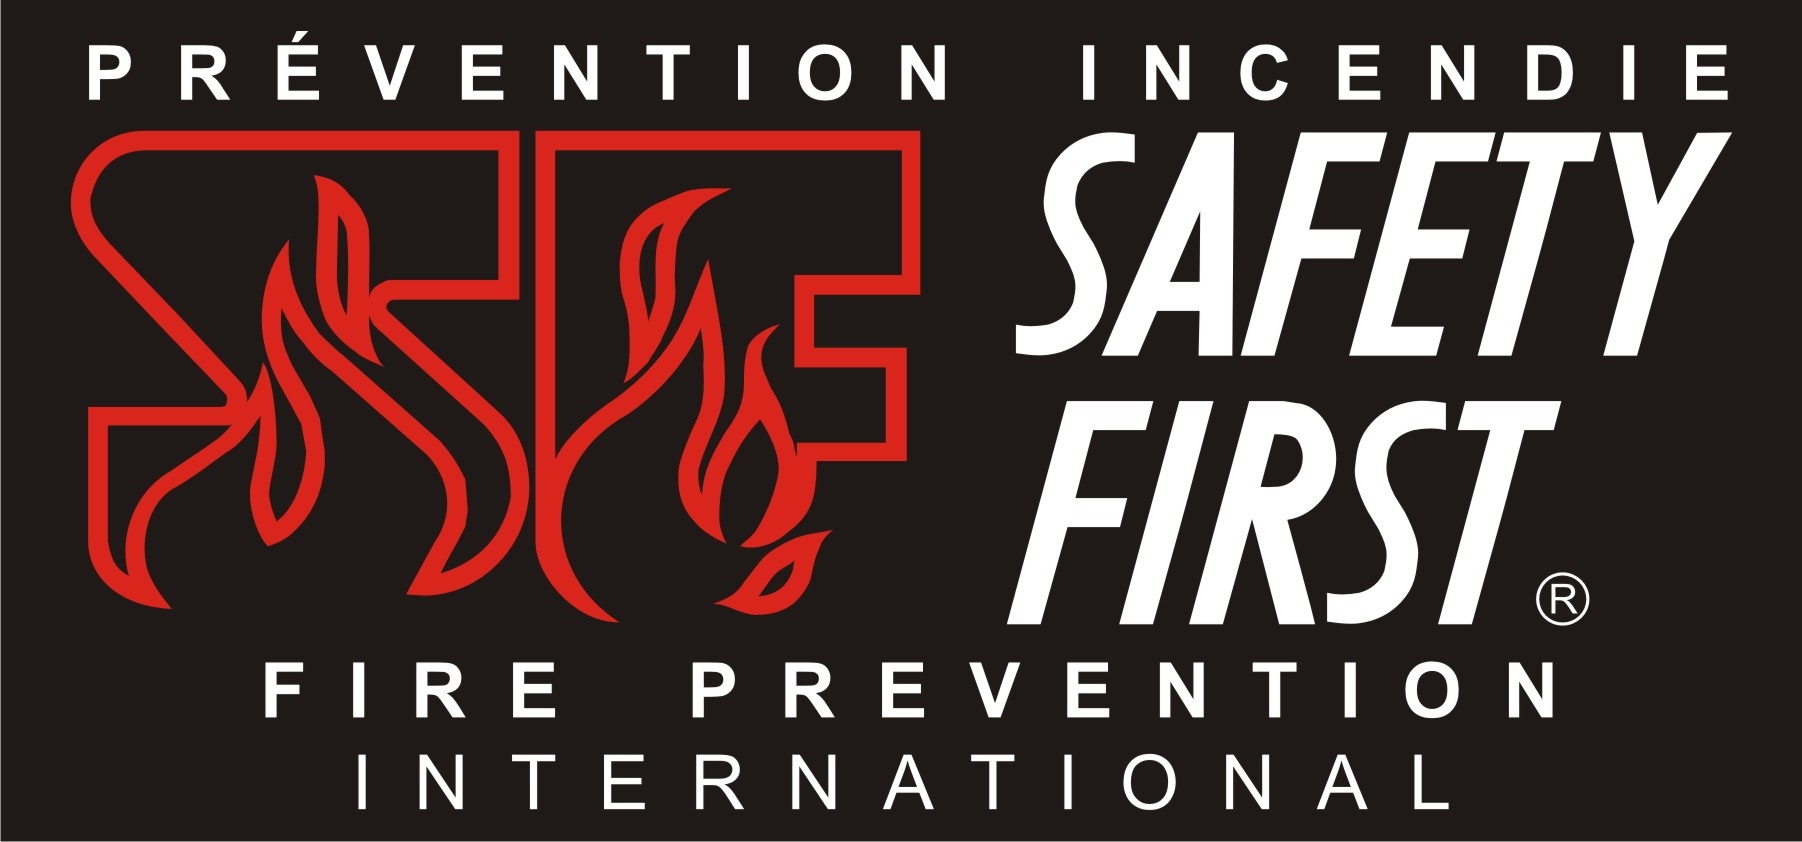 Prévention Incendie Safety First Inc.